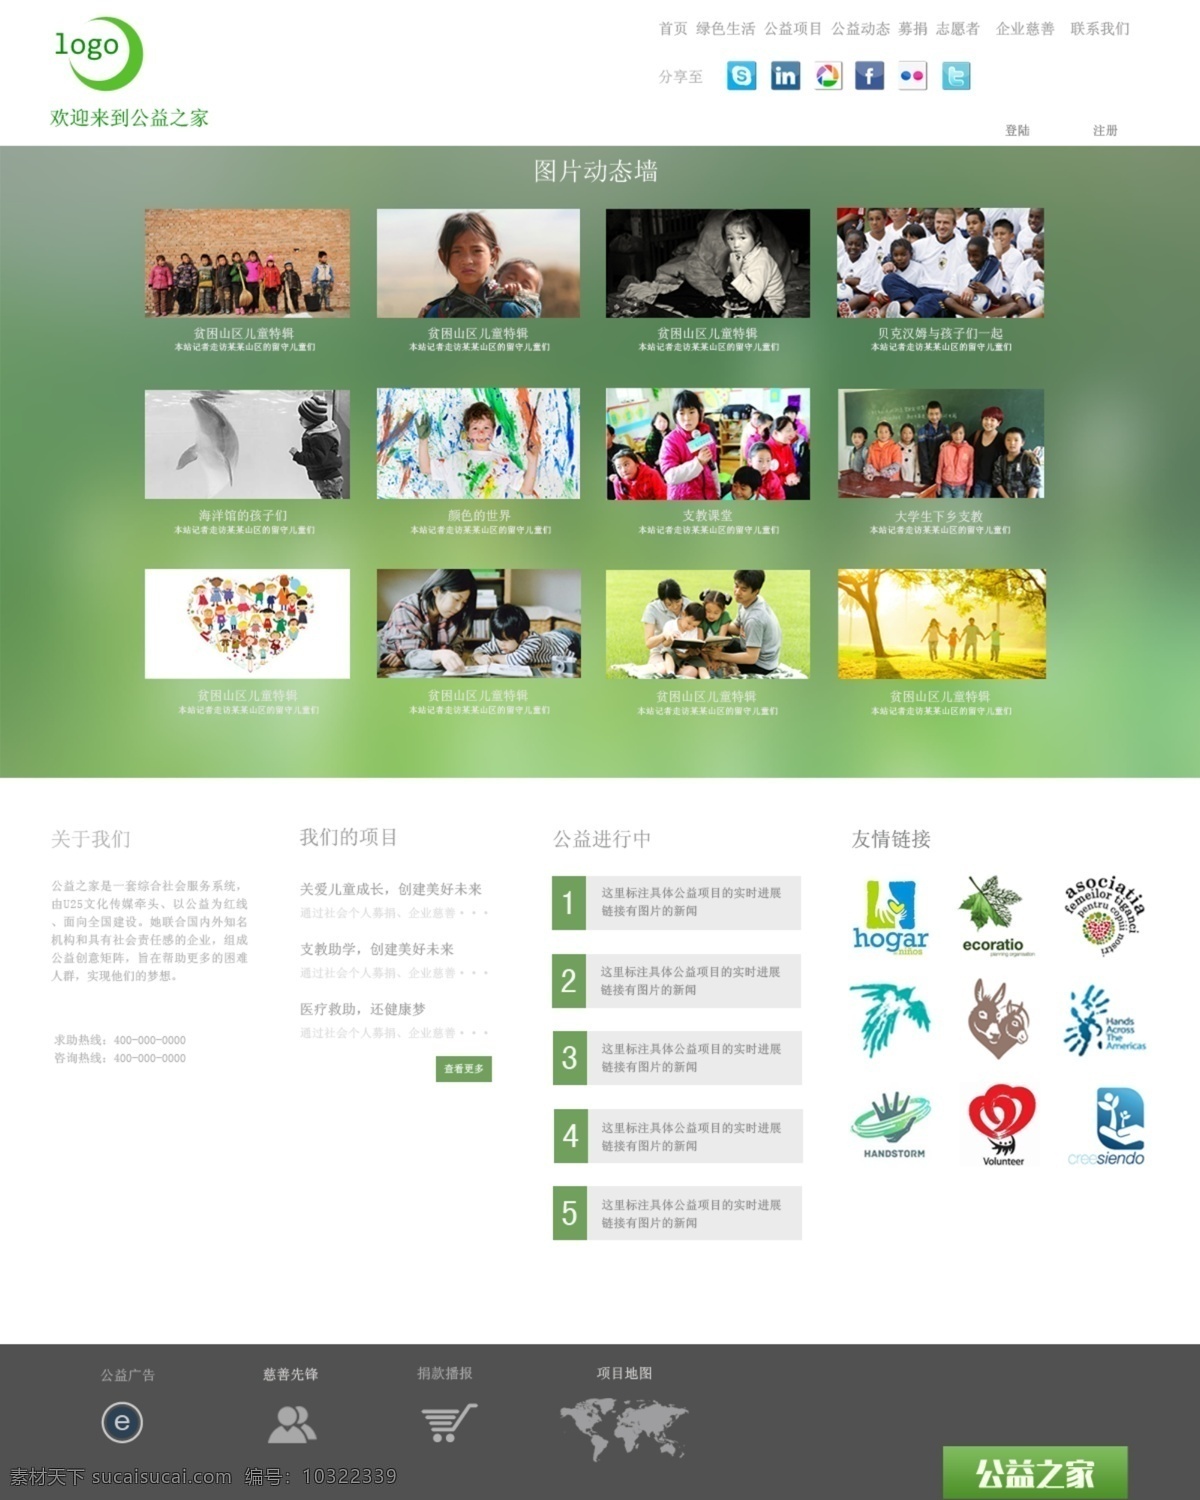 简介 win8 界面 网页设计 公益 绿色 原创设计 原创网页设计